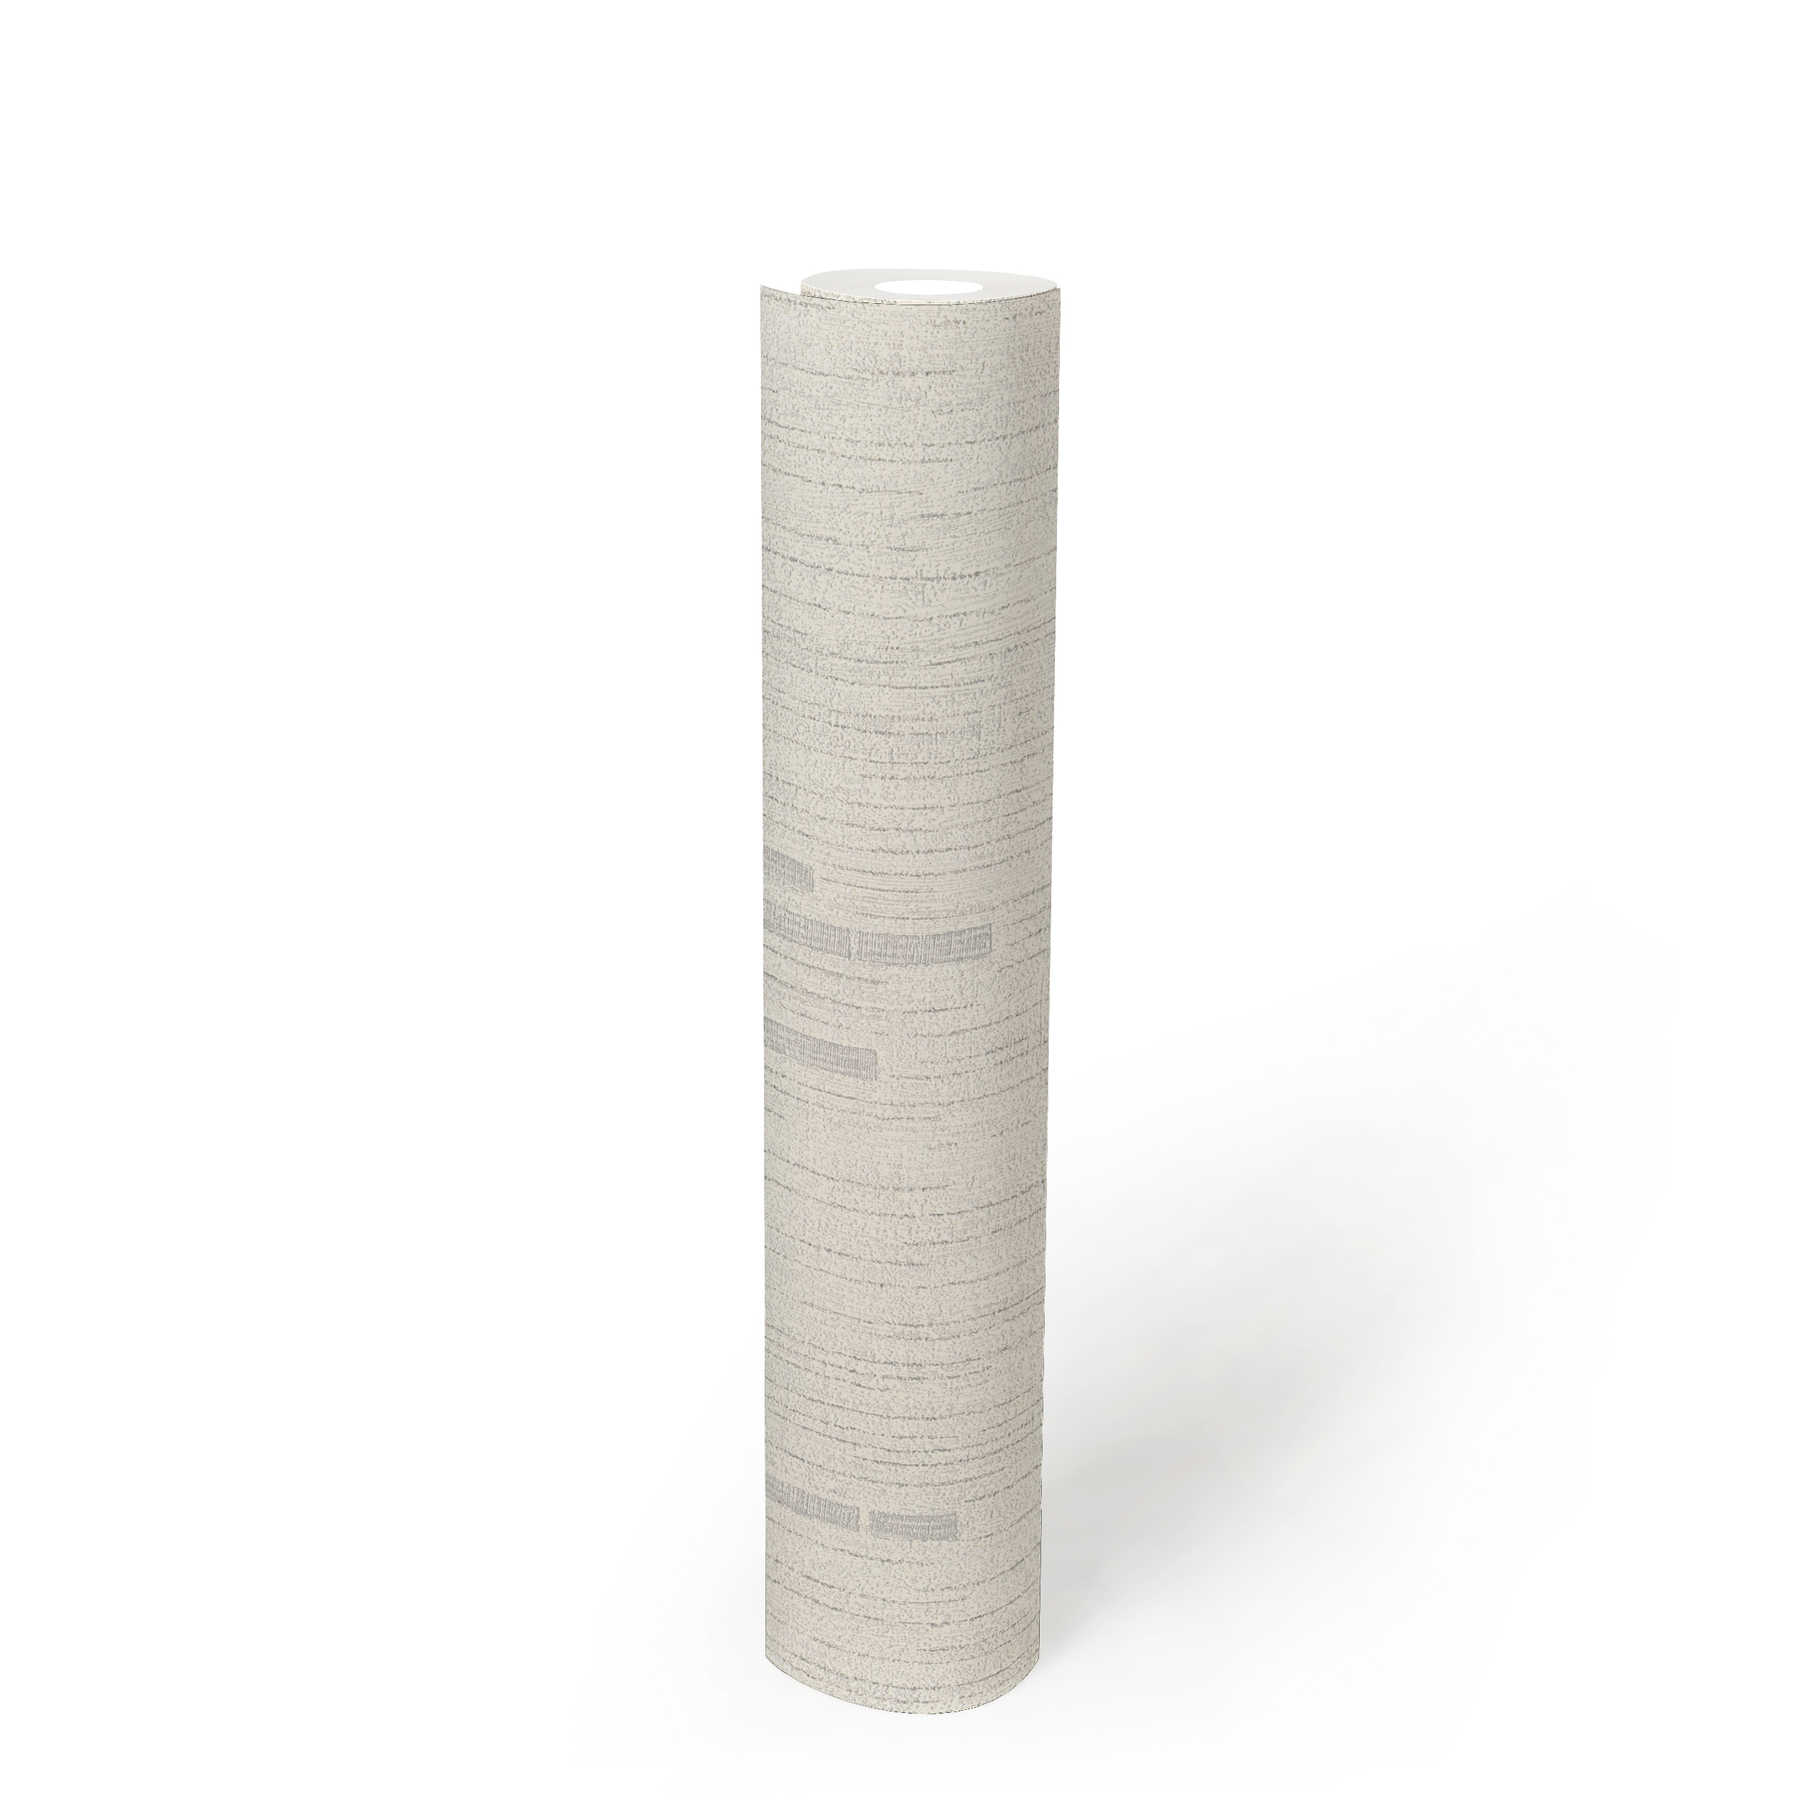             Papier peint rétro avec intissé structuré et design discret - gris, métallique, blanc
        